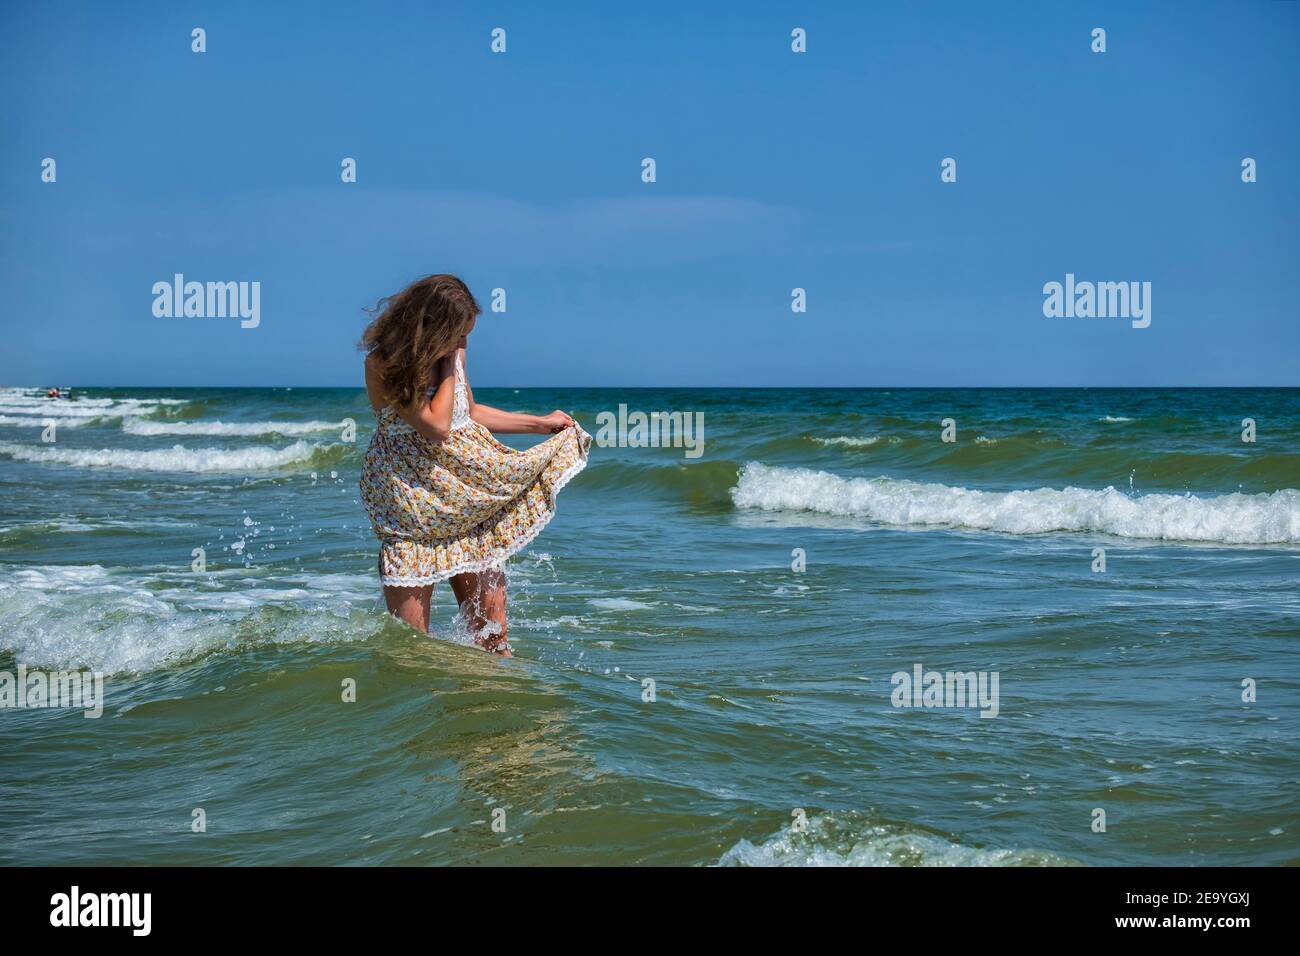 Une jeune fille se tient dans la mer, soulevant le bord d'une sundress pour qu'elle ne soit pas humide Banque D'Images